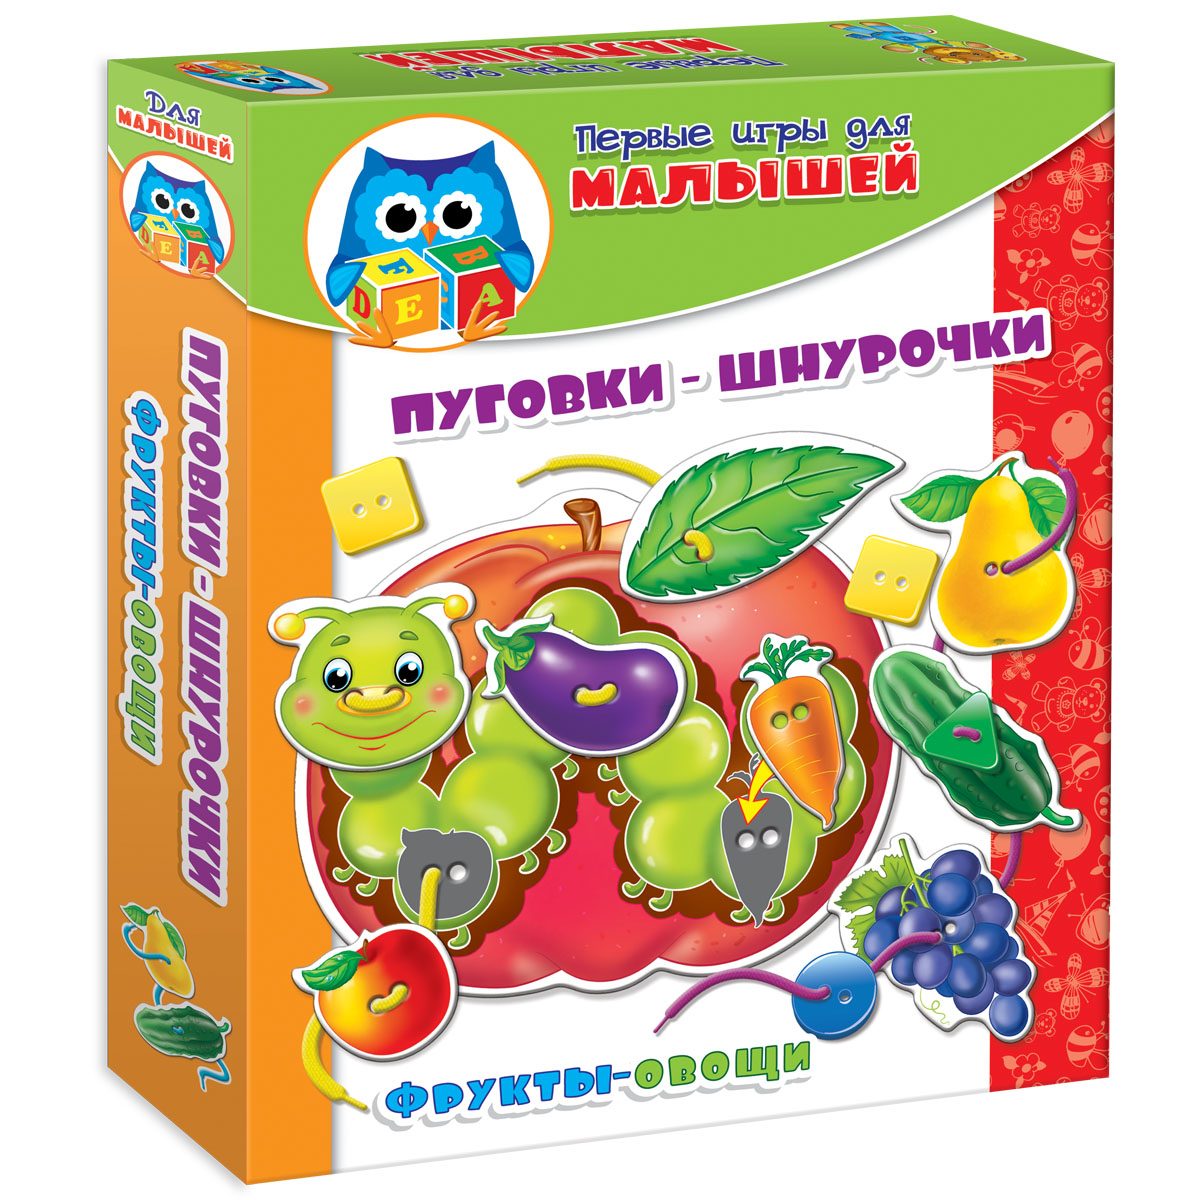 Первые игры для малышей Игры с пуговками + шнуровка Фрукты-овощи